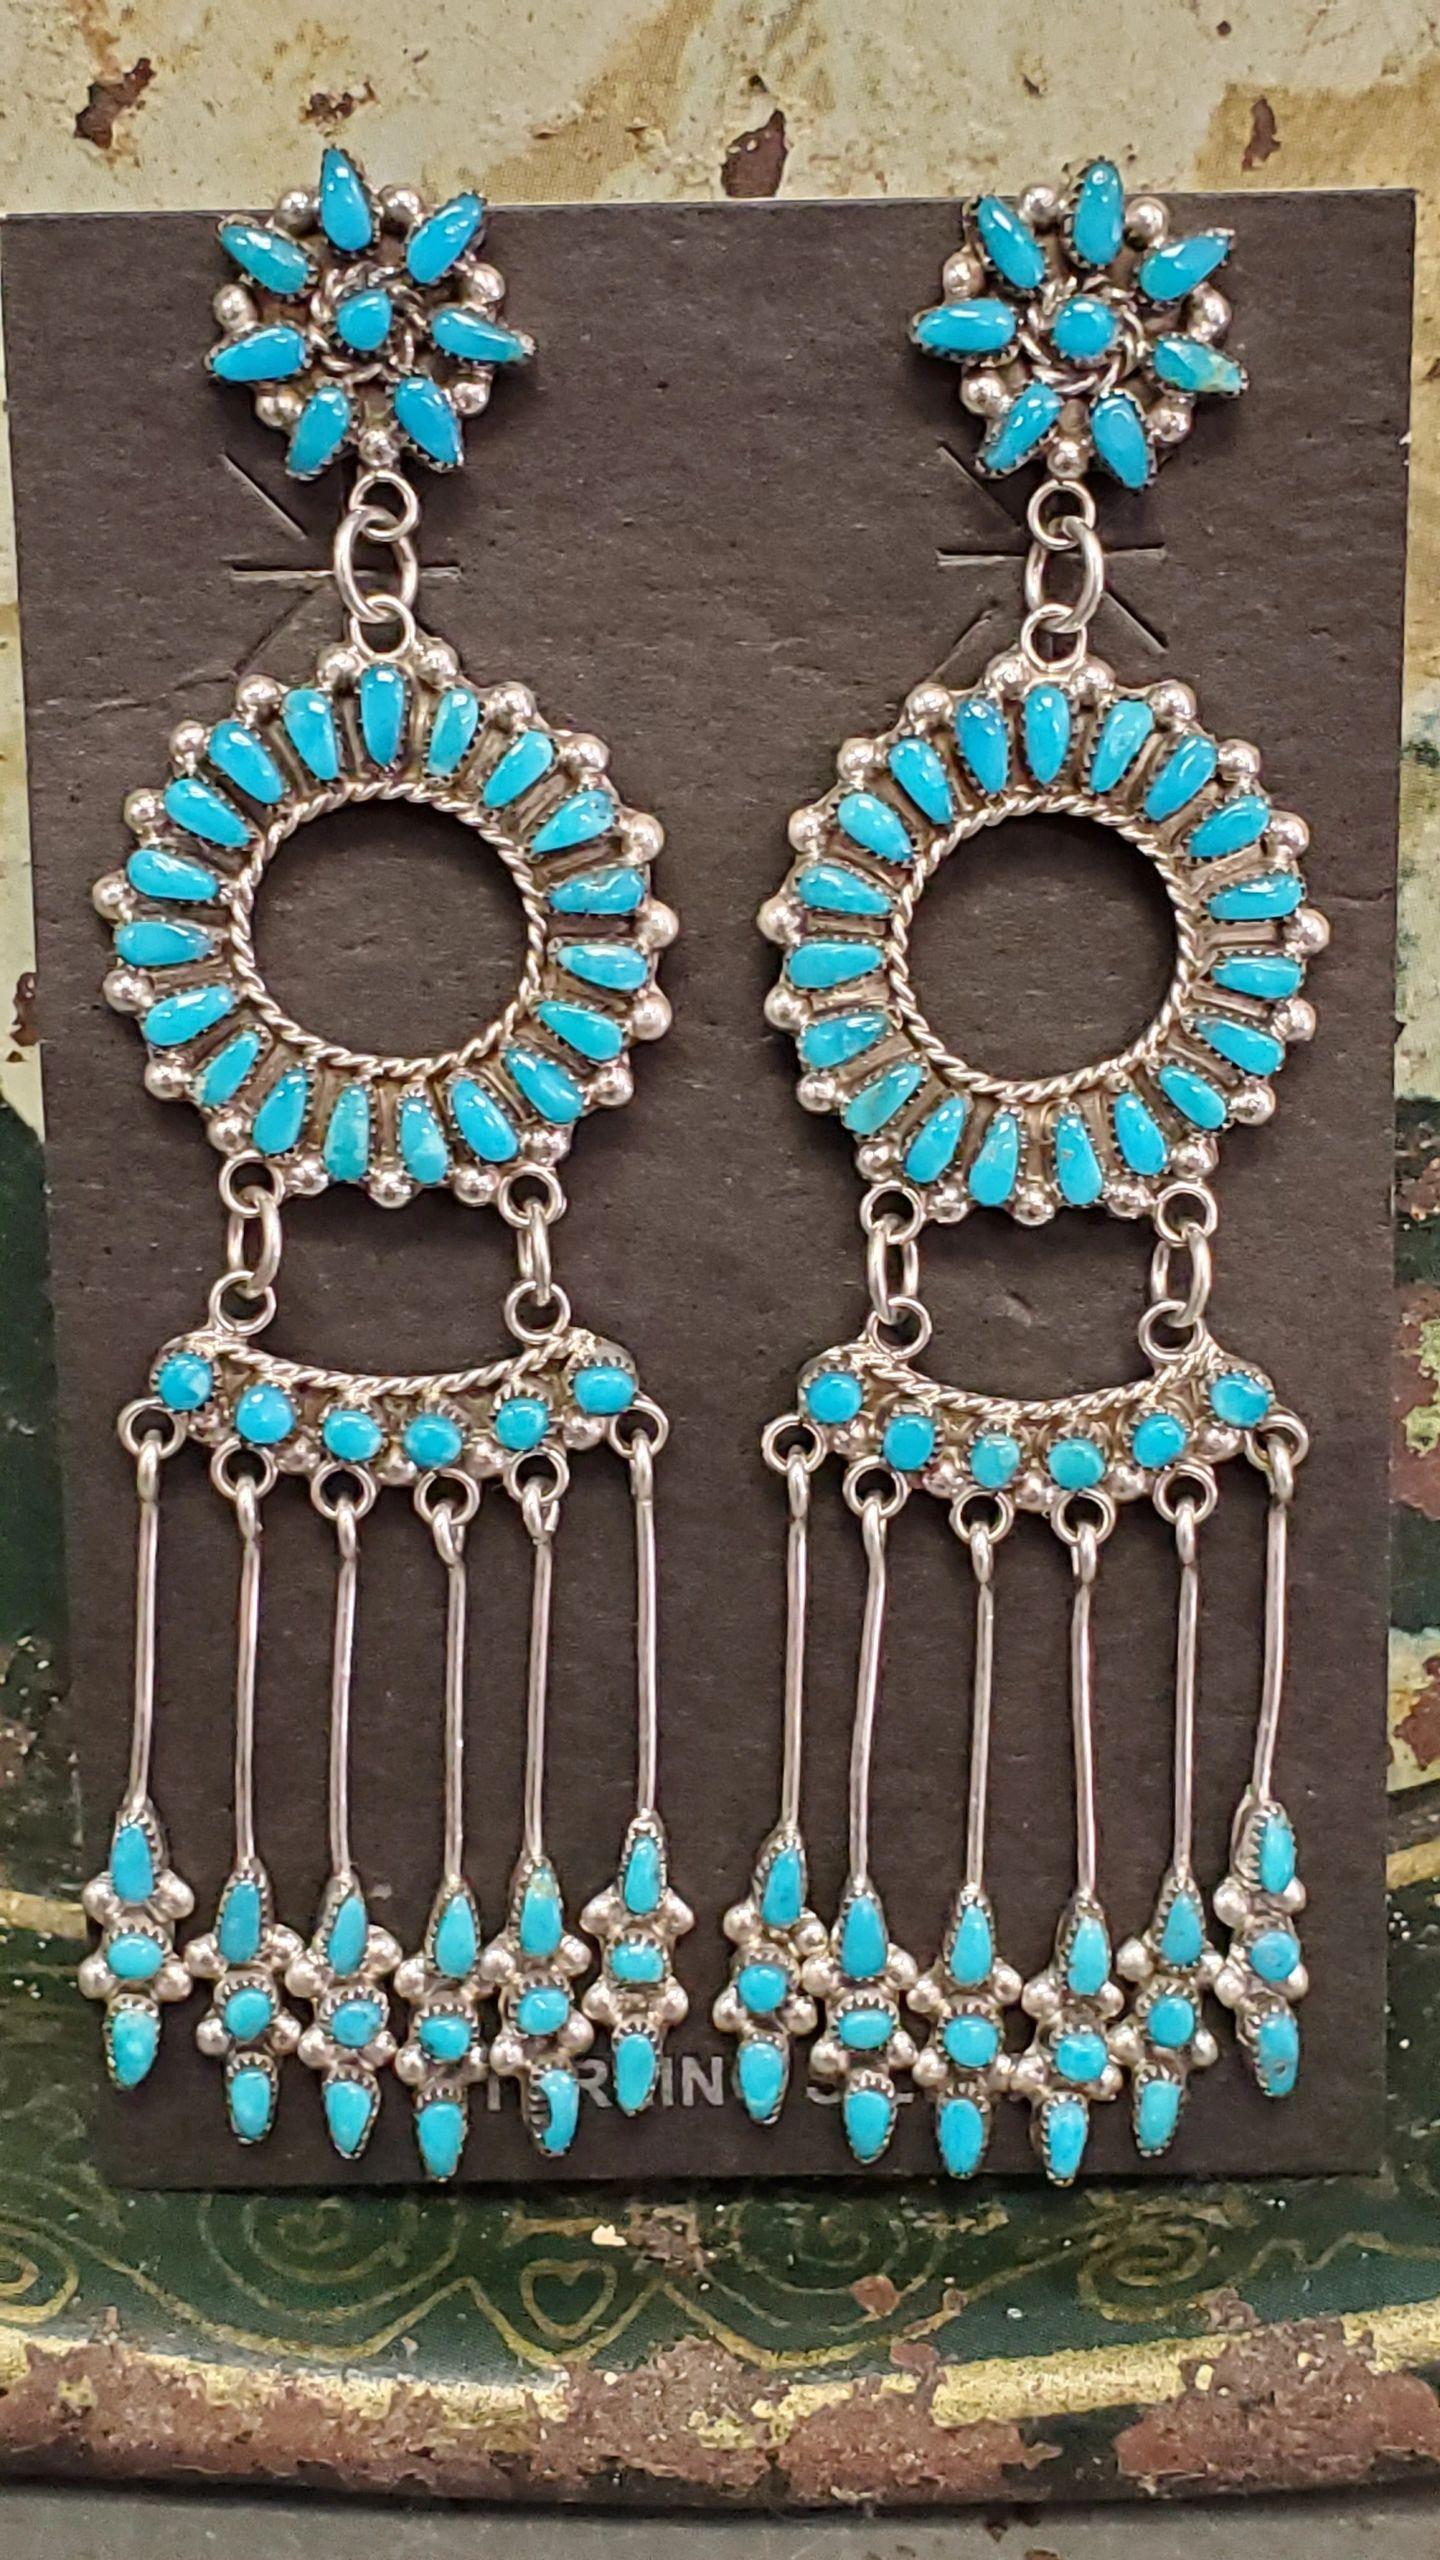 Dishta Petit point sunshine chandelier earrings - Albuquerque Pawn Shop